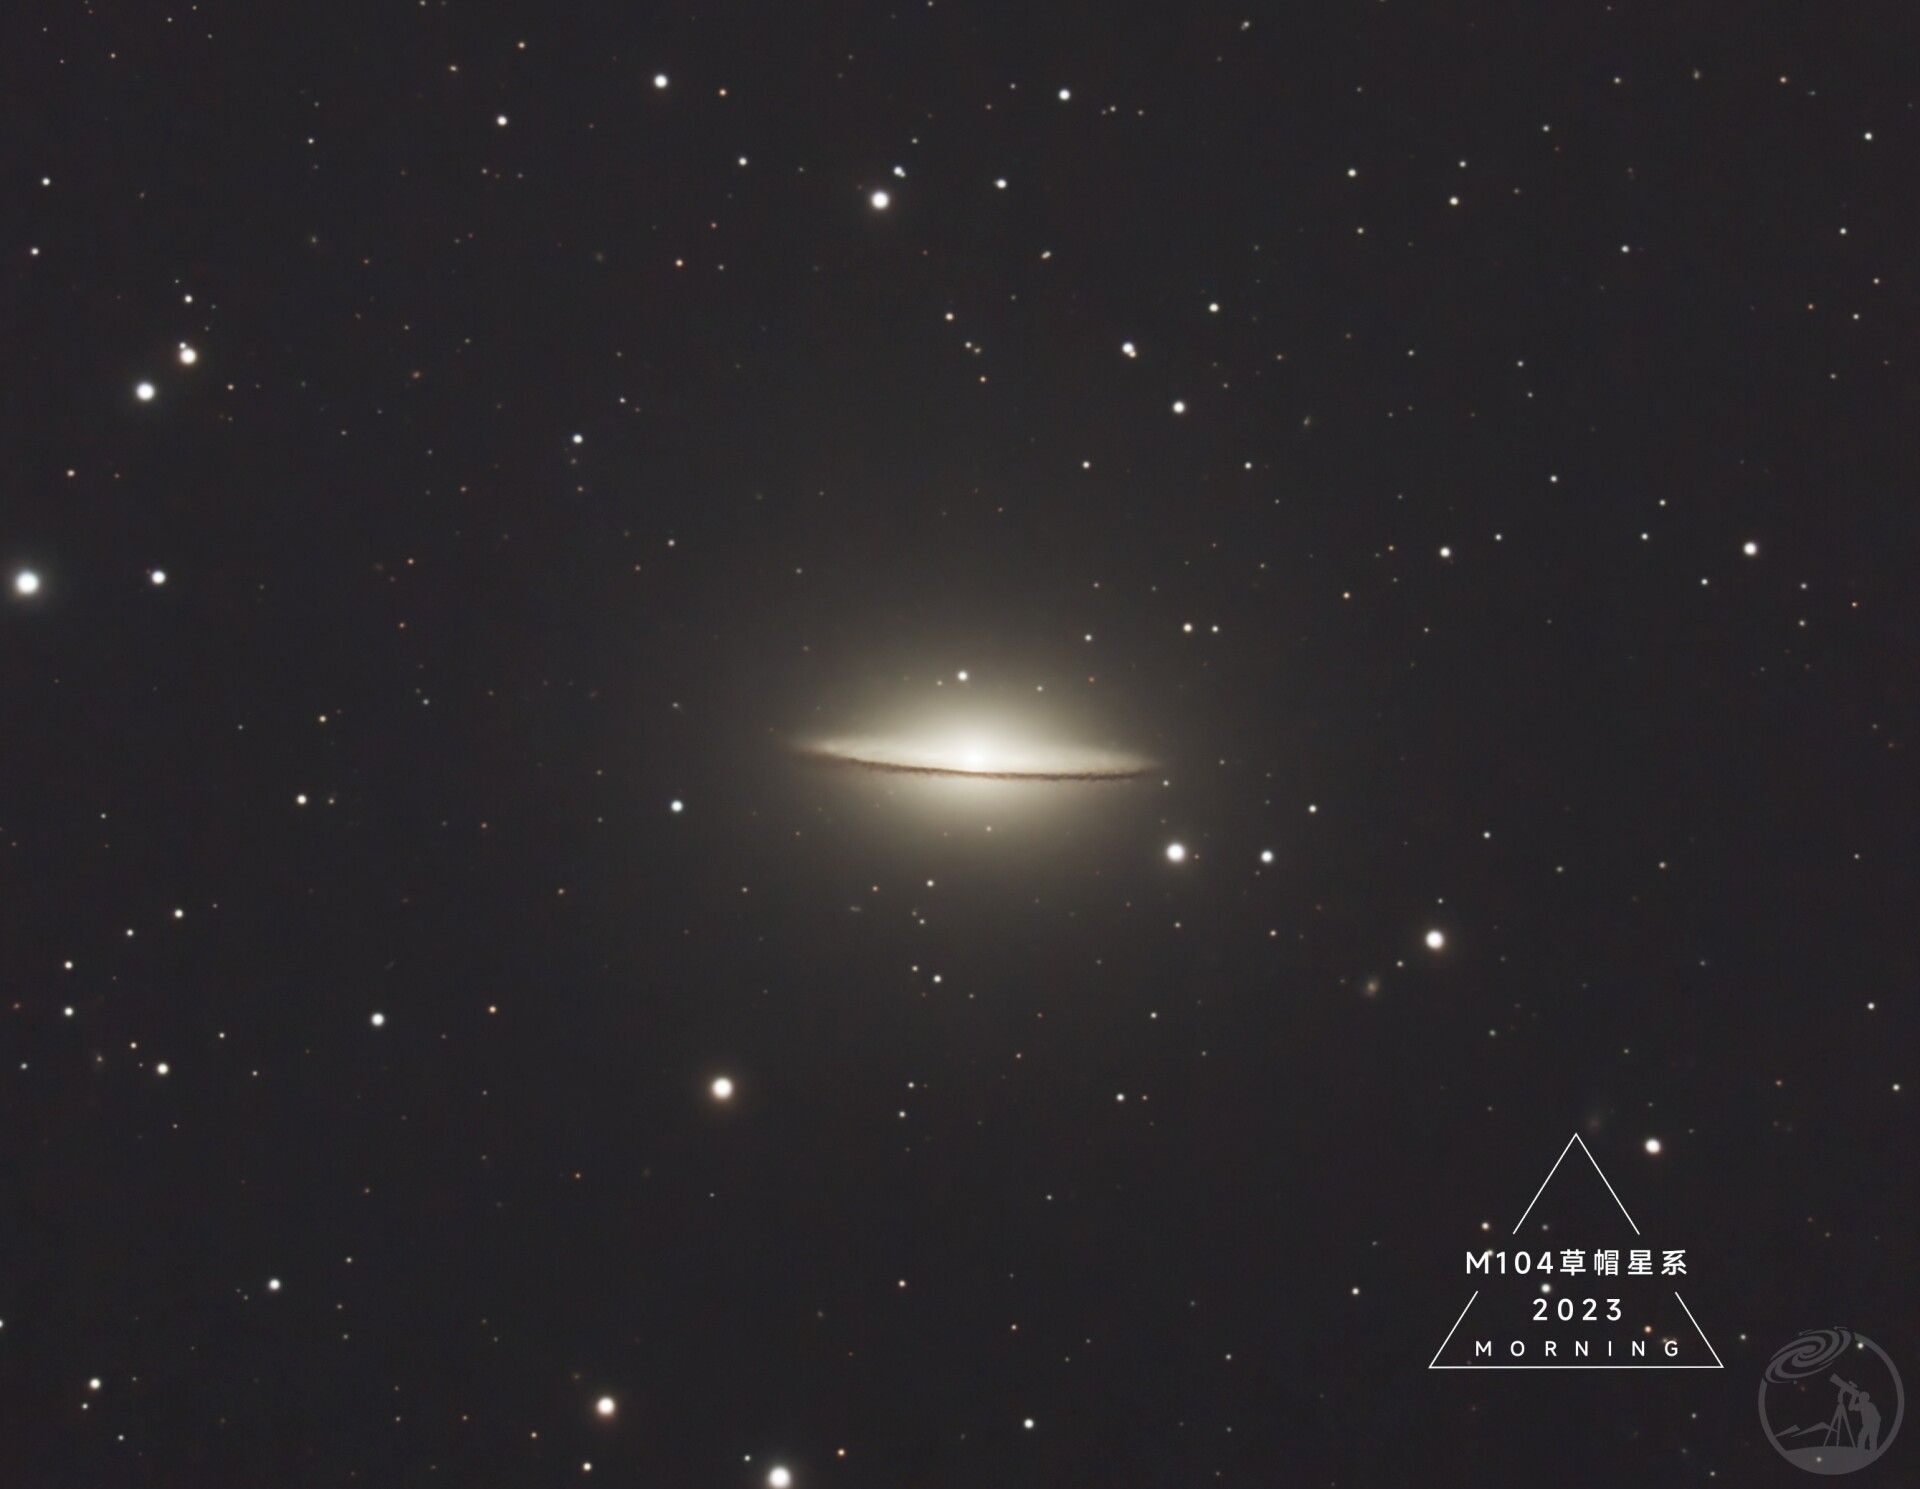 M104草帽星系